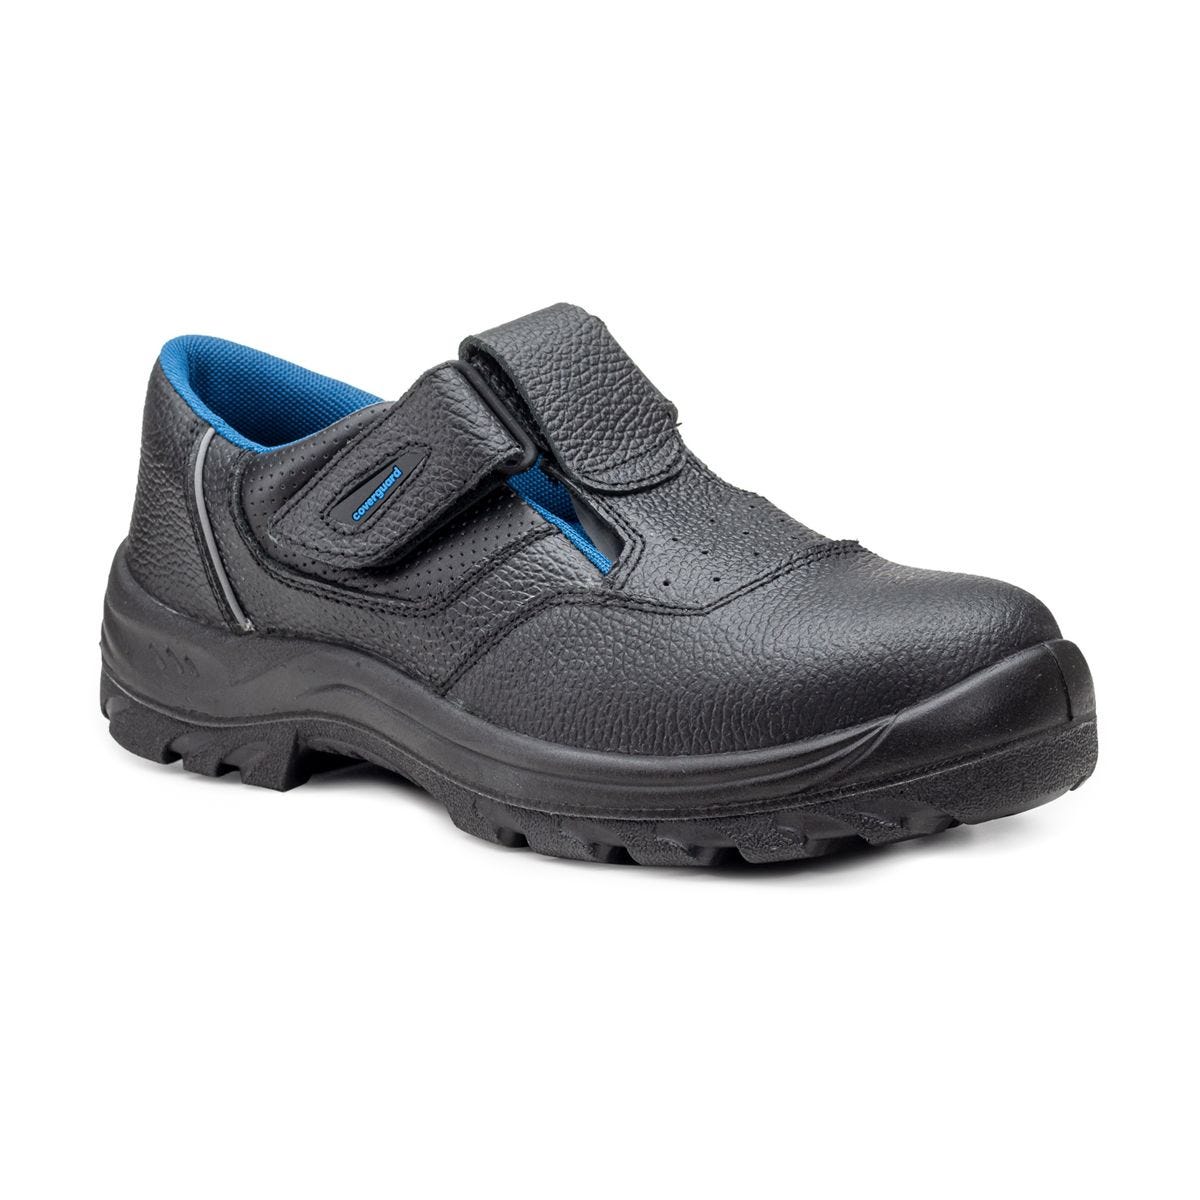 Sandales de sécurité basses Bosco II noir - Coverguard - Taille 46 0